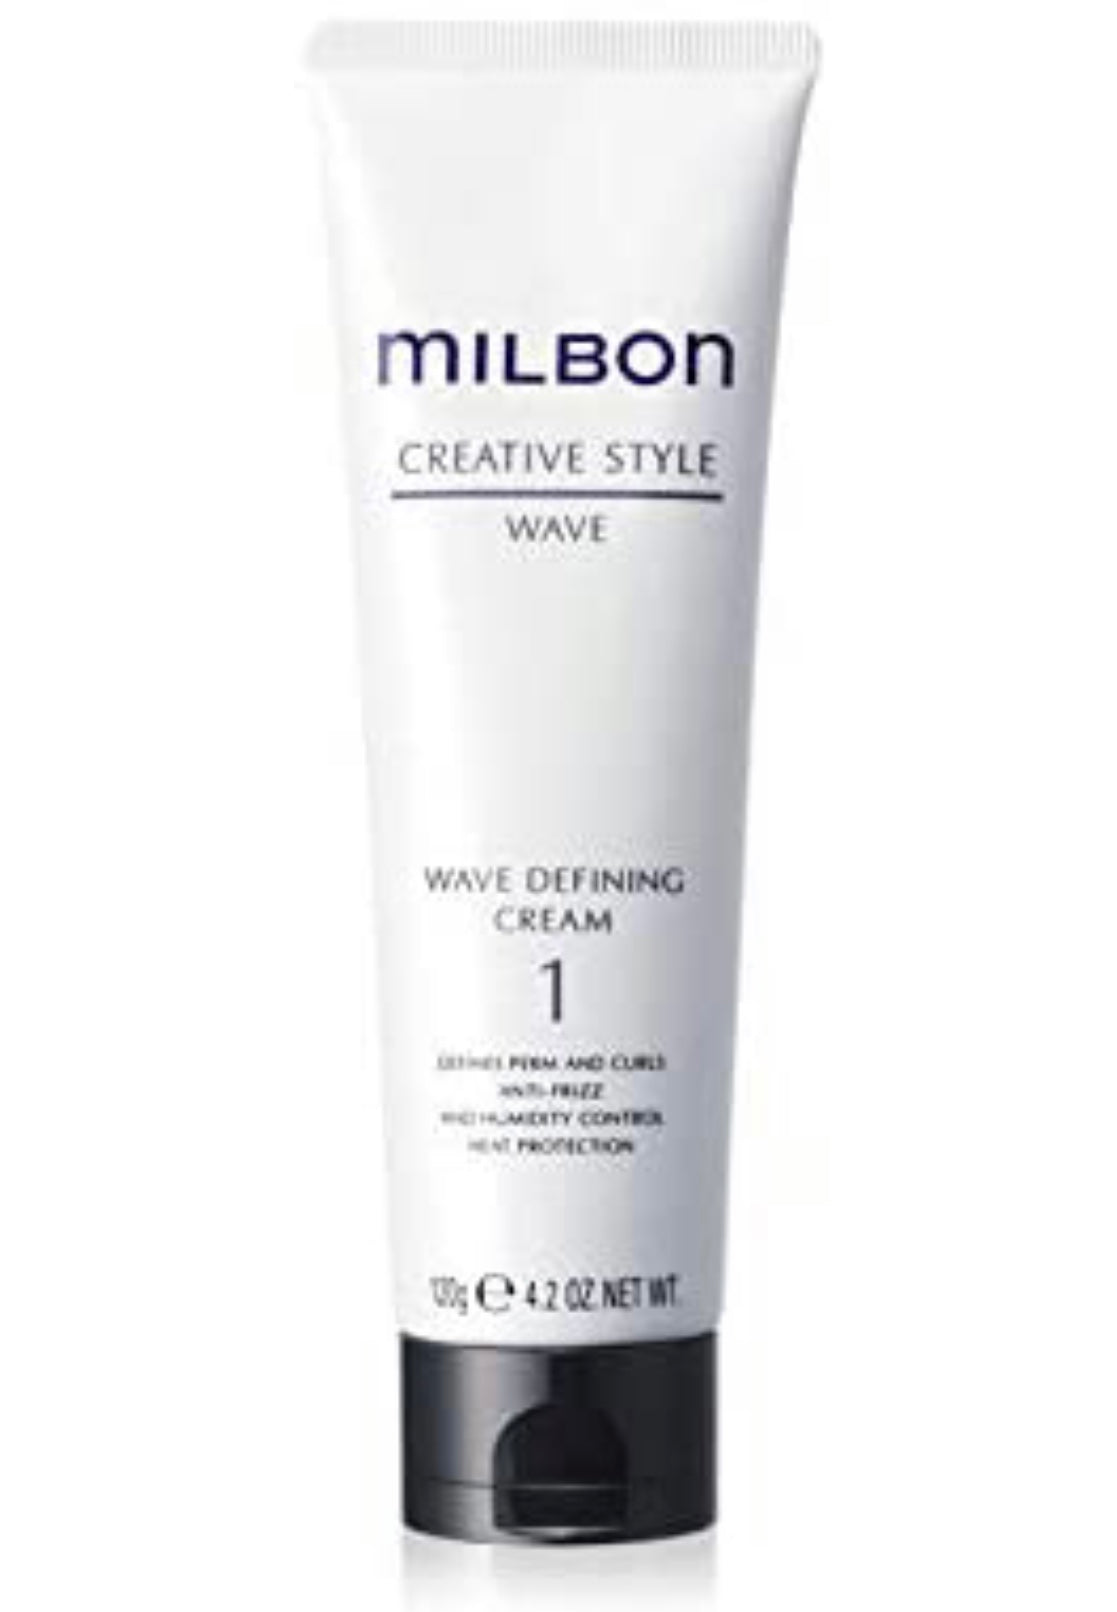 Milbon - Creative style Wave defining cream #1 4.2 fl. oz. / 120 gr